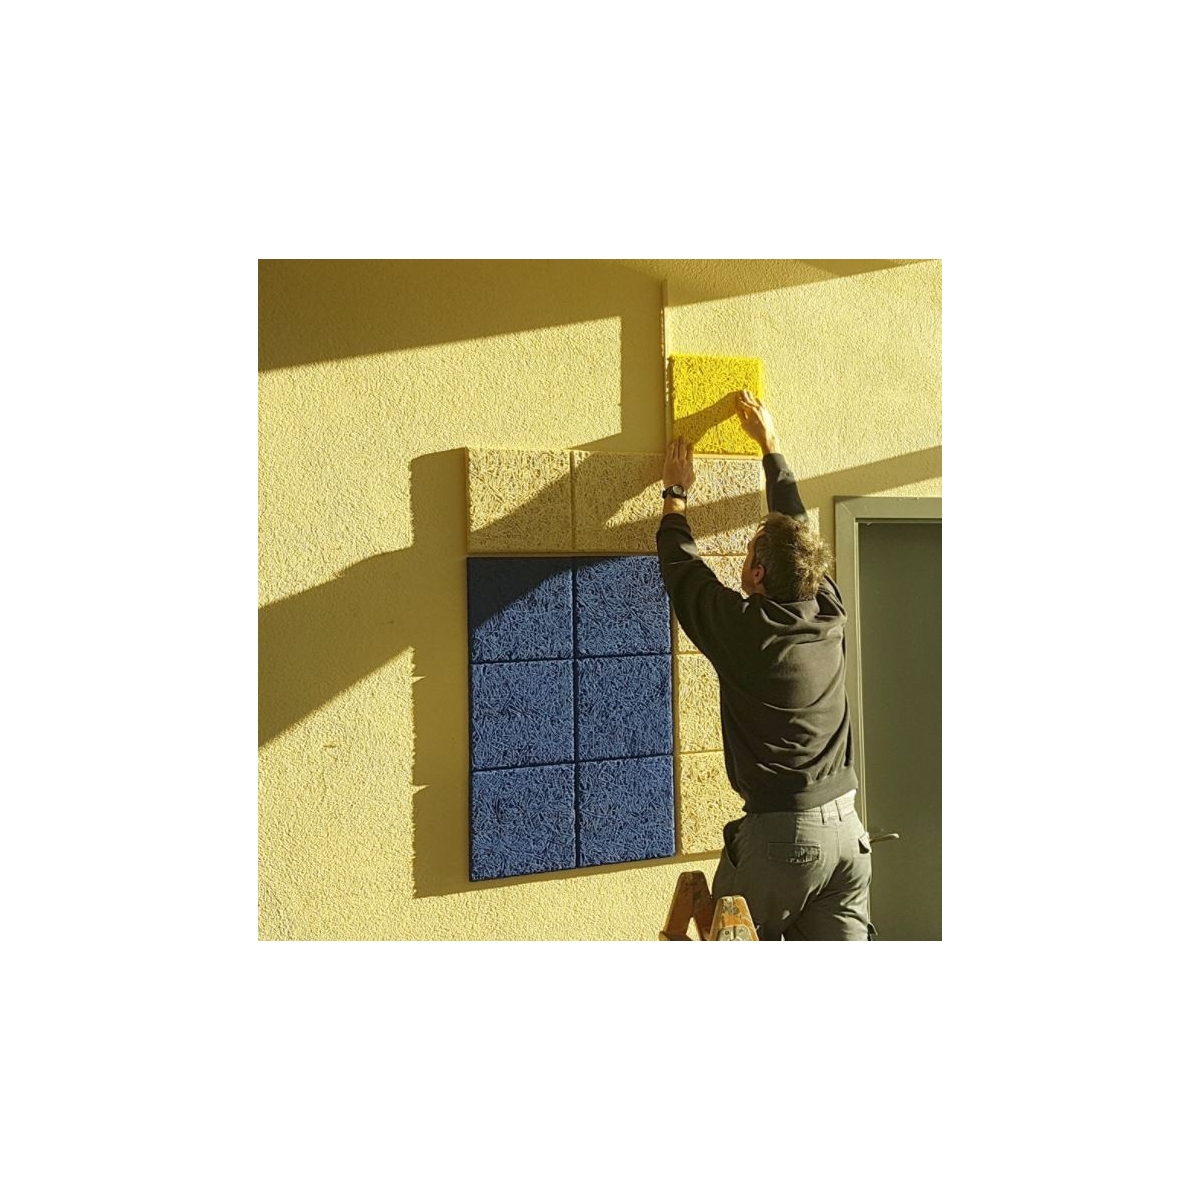 Comprar painel acústico isolante para parede em abeto natural ao melhor preço